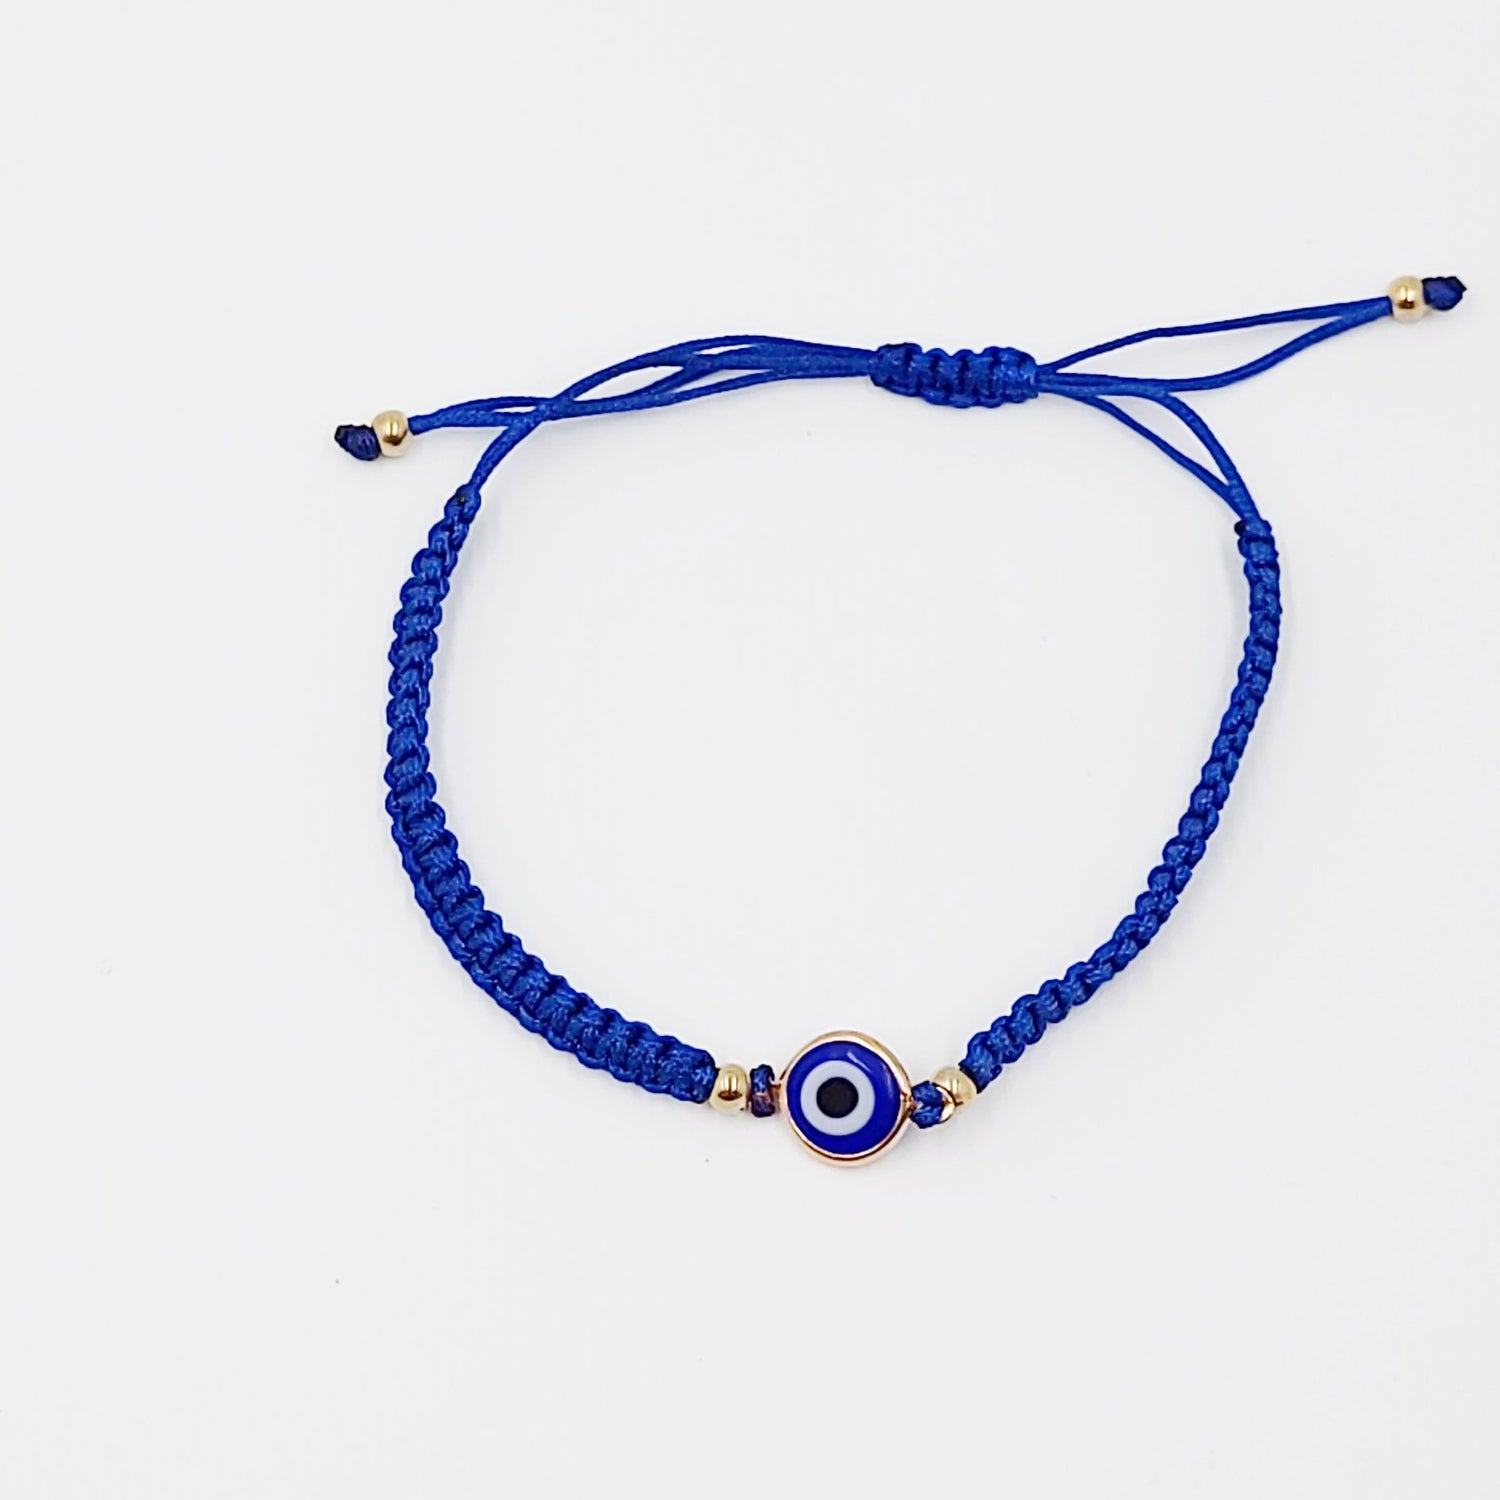 Blue Evil Eye Bracelet Blue String Bracelet - Elevated Metaphysical